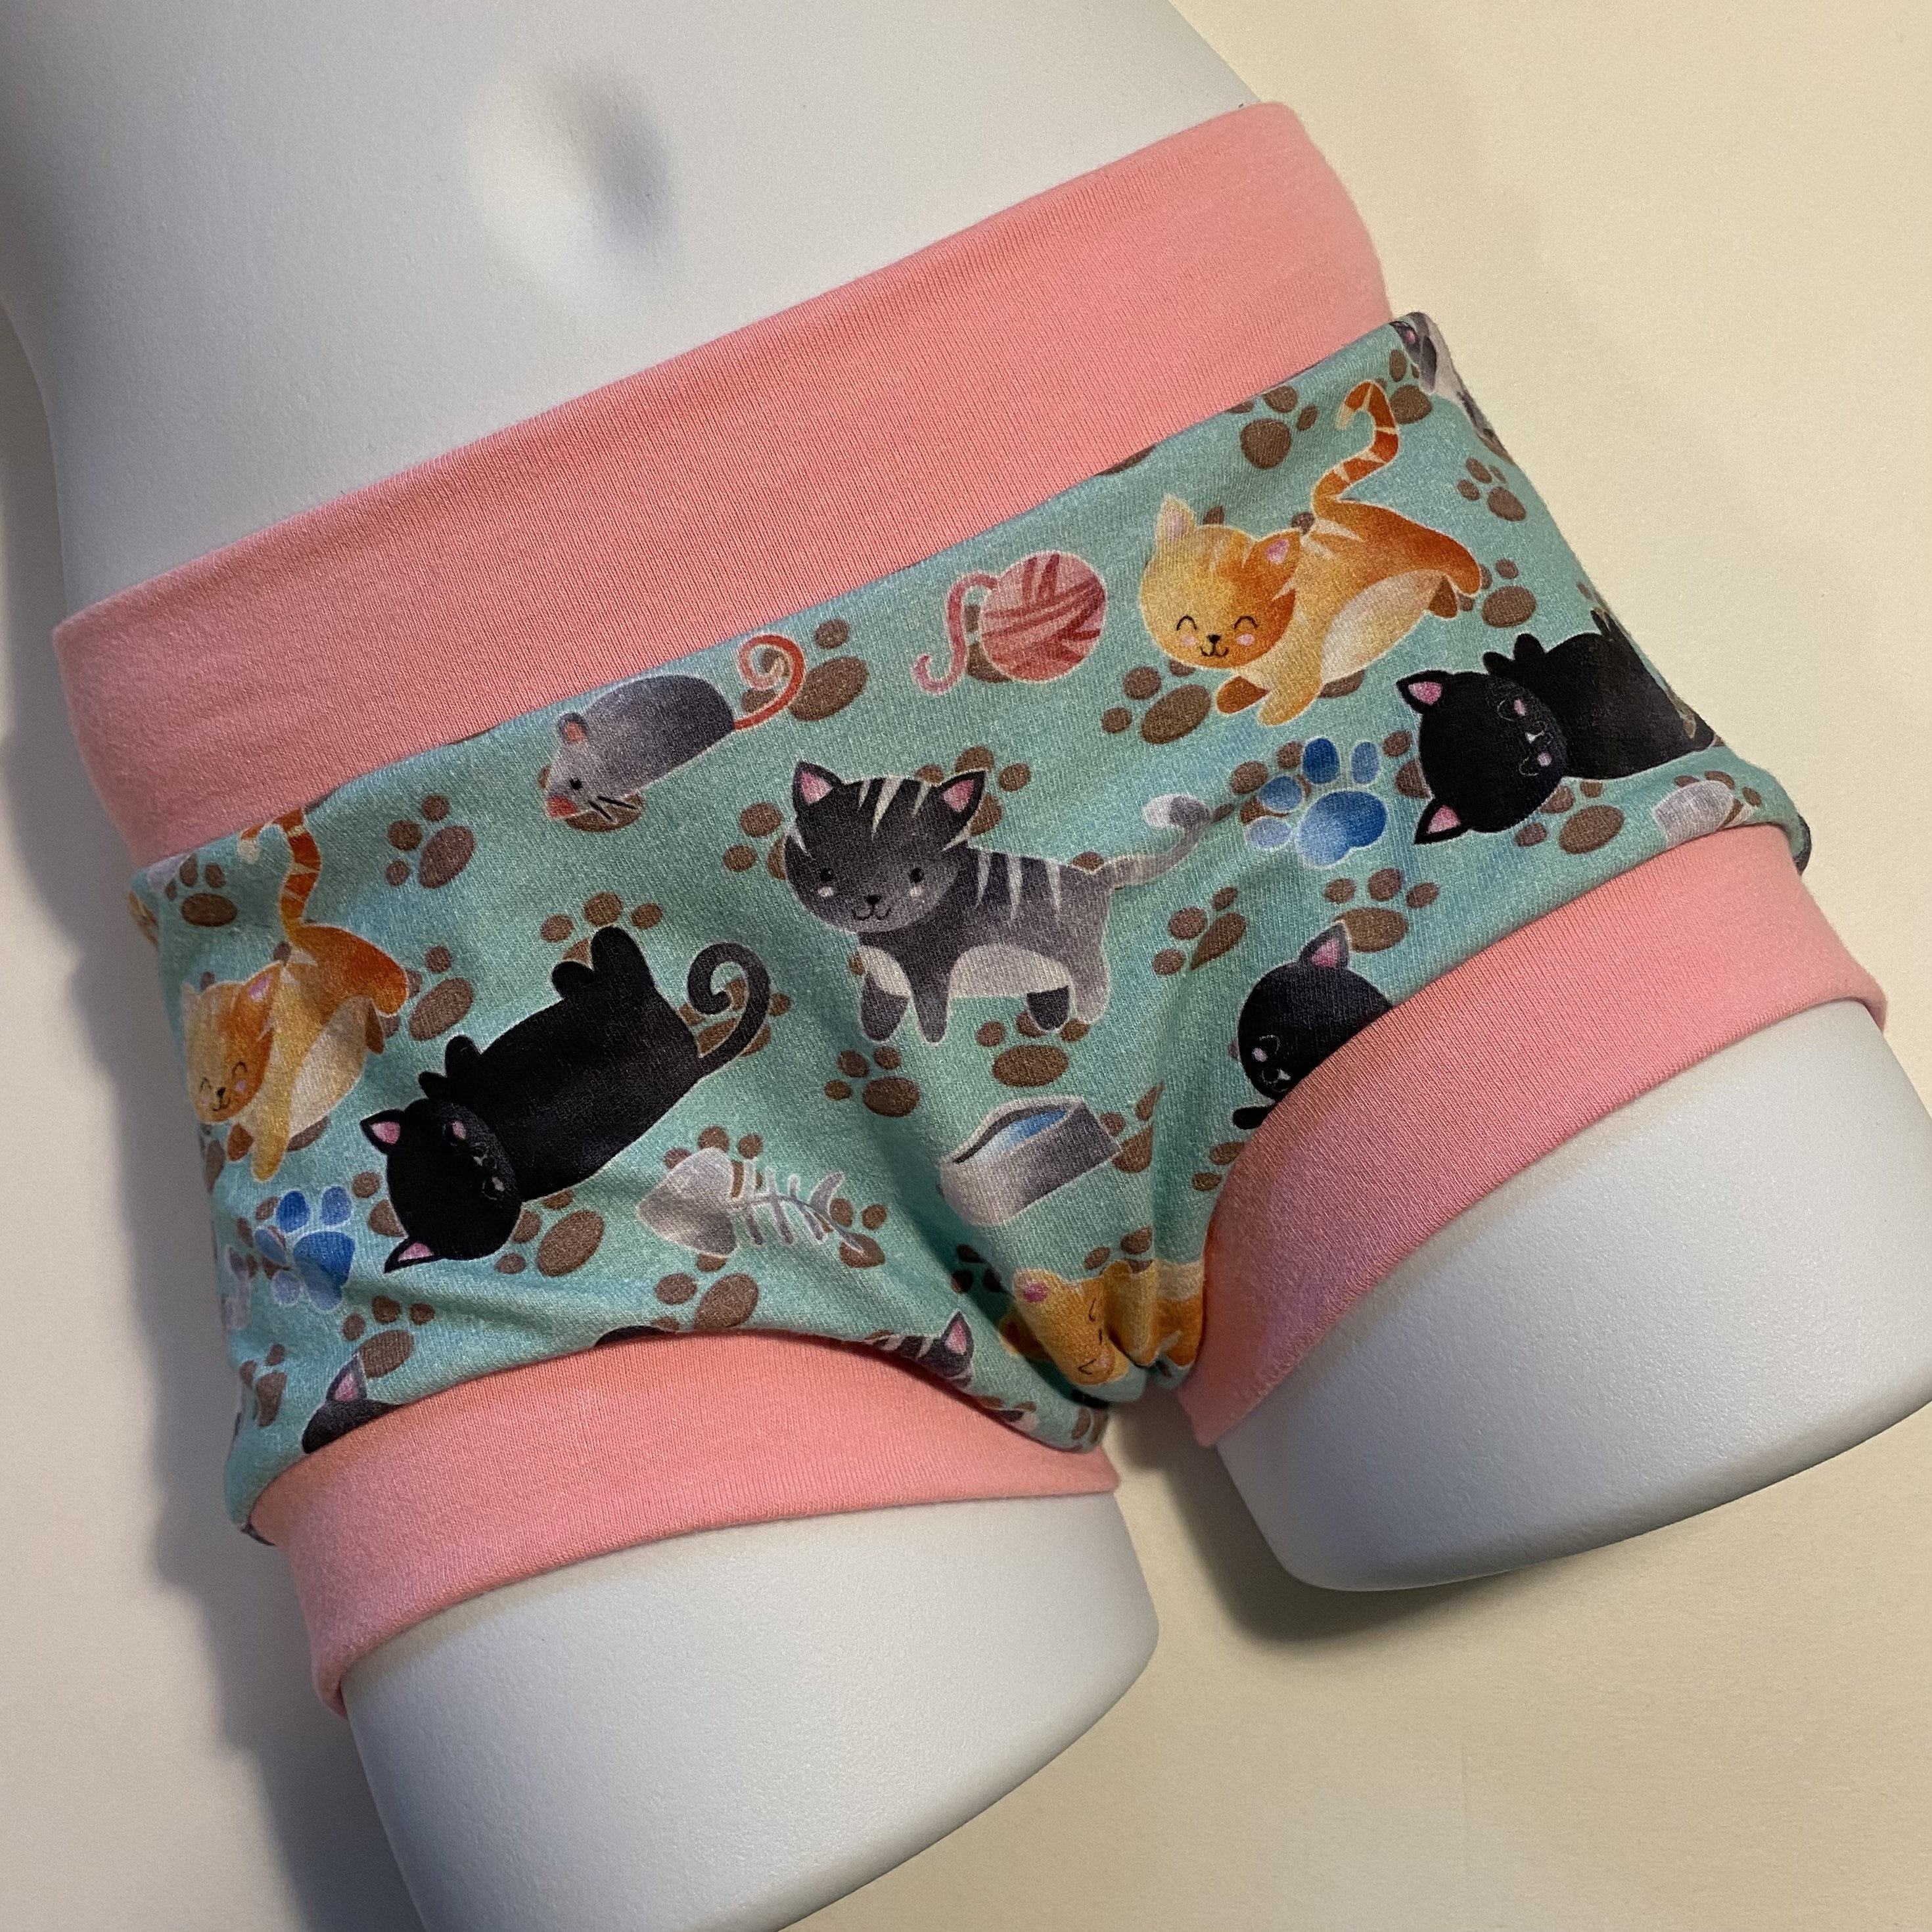 Tuck Buddies - Underwear for Trans Children? 